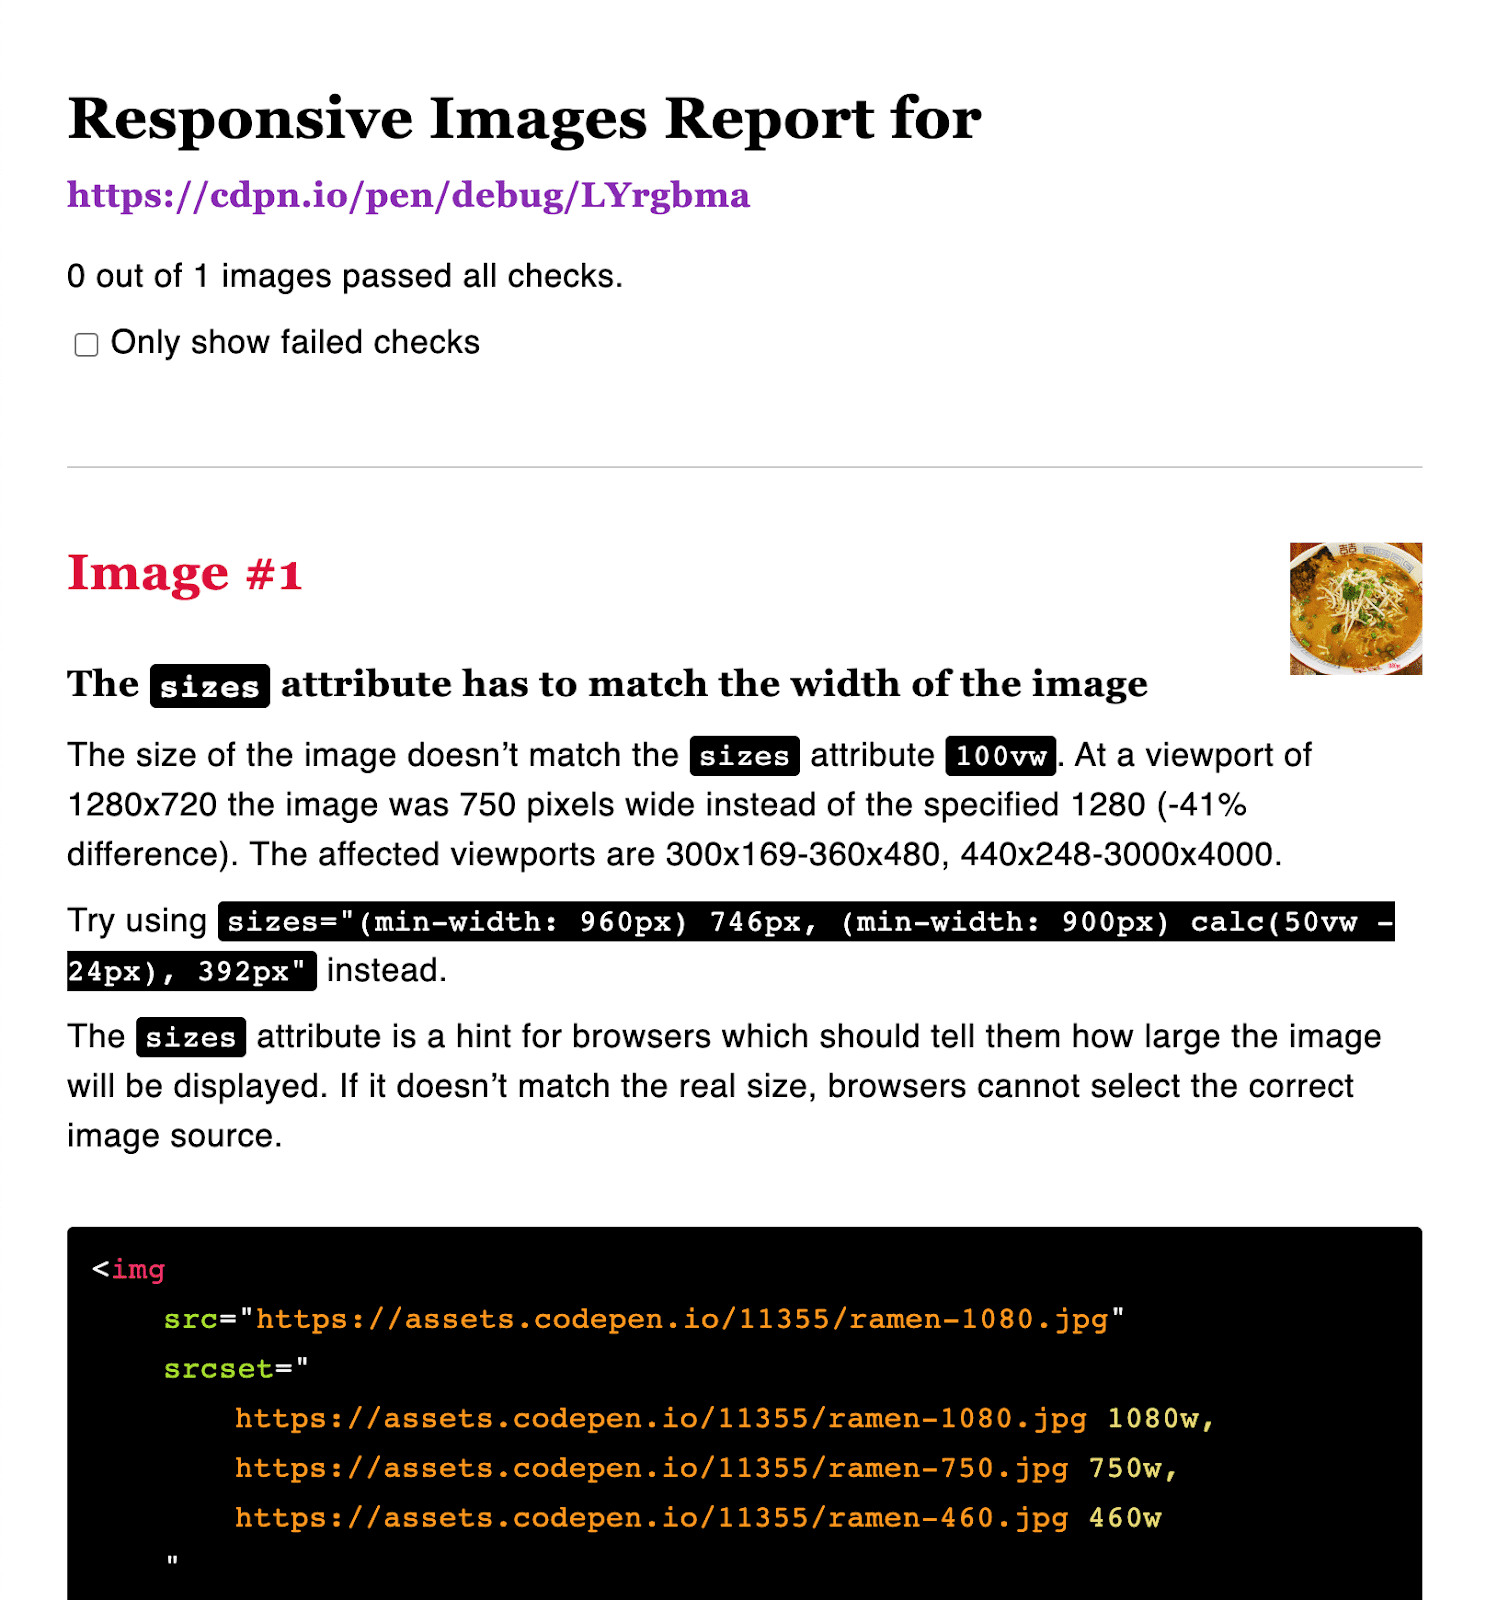 Bericht zu responsiven Bildern mit vorgeschlagenen Abmessungen